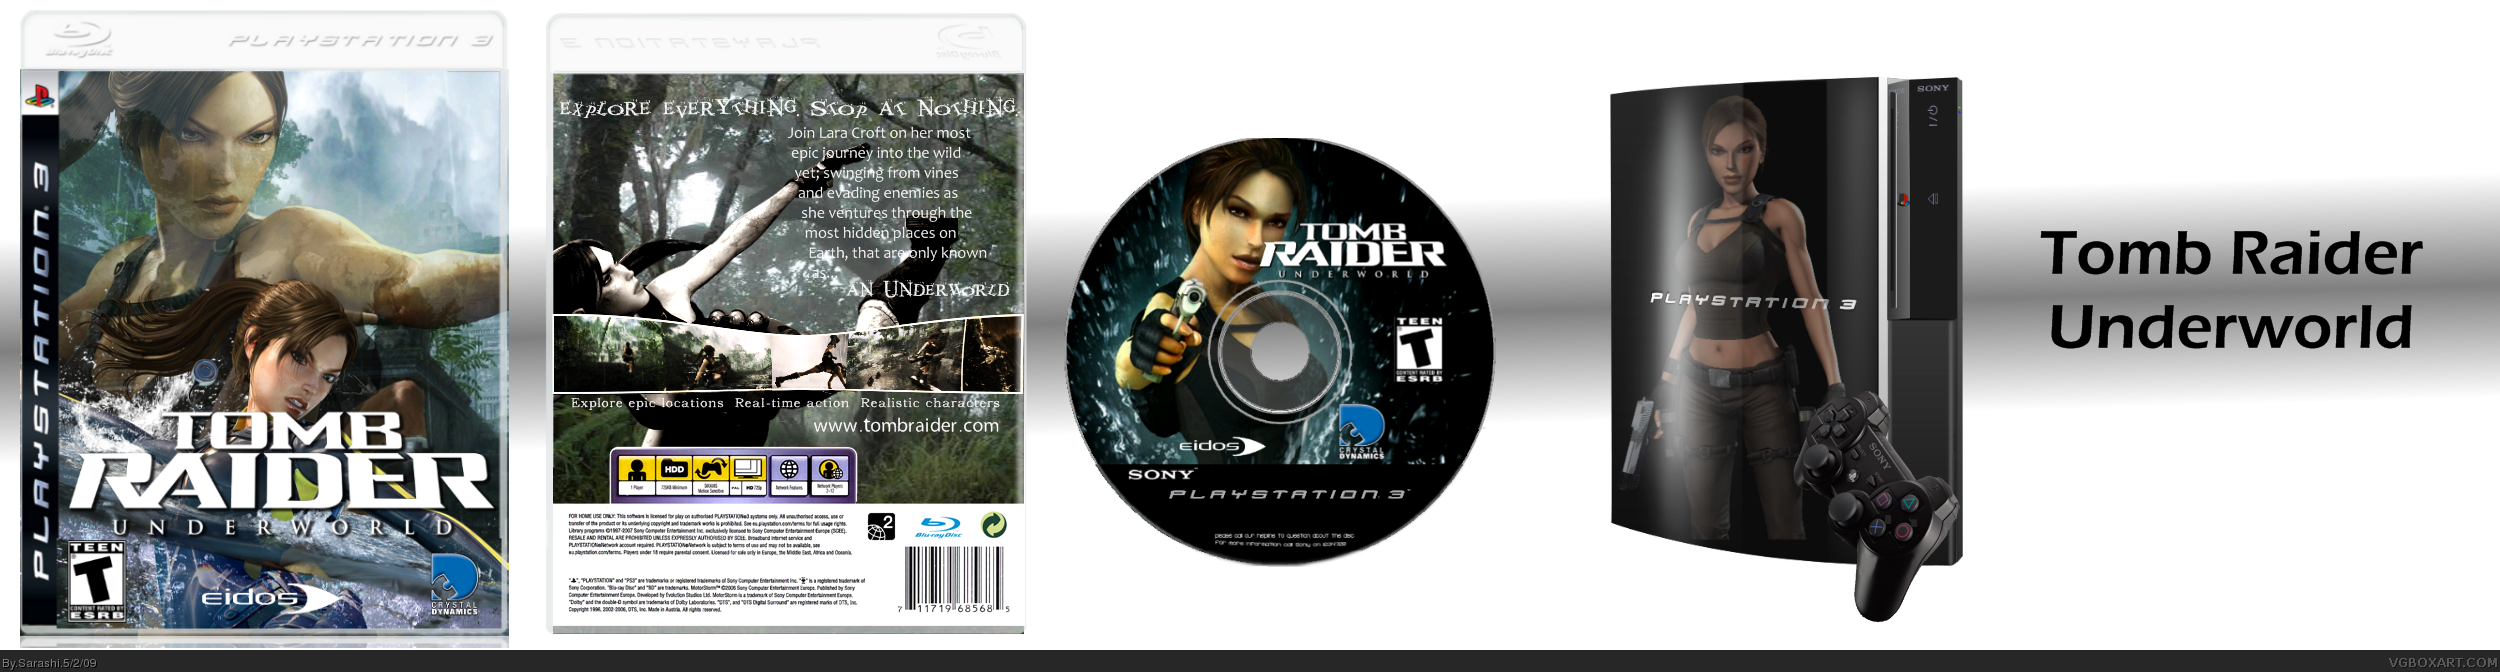 Tomb Raider Underworld Pack box cover